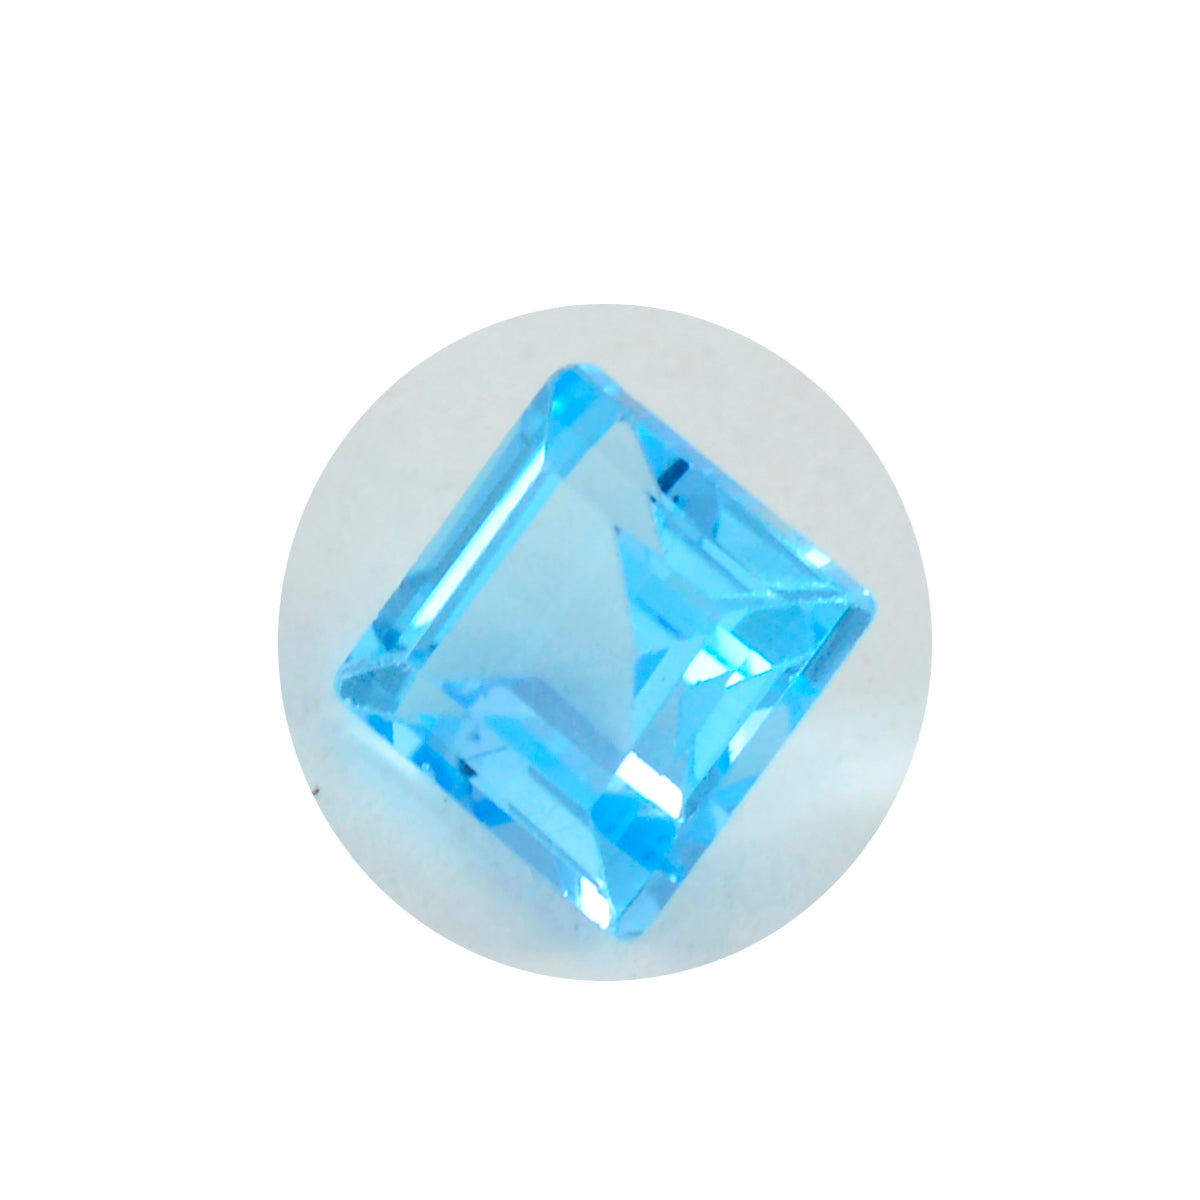 riyogems 1 шт. натуральный синий топаз ограненный 11x11 мм квадратной формы красивый качественный свободный драгоценный камень